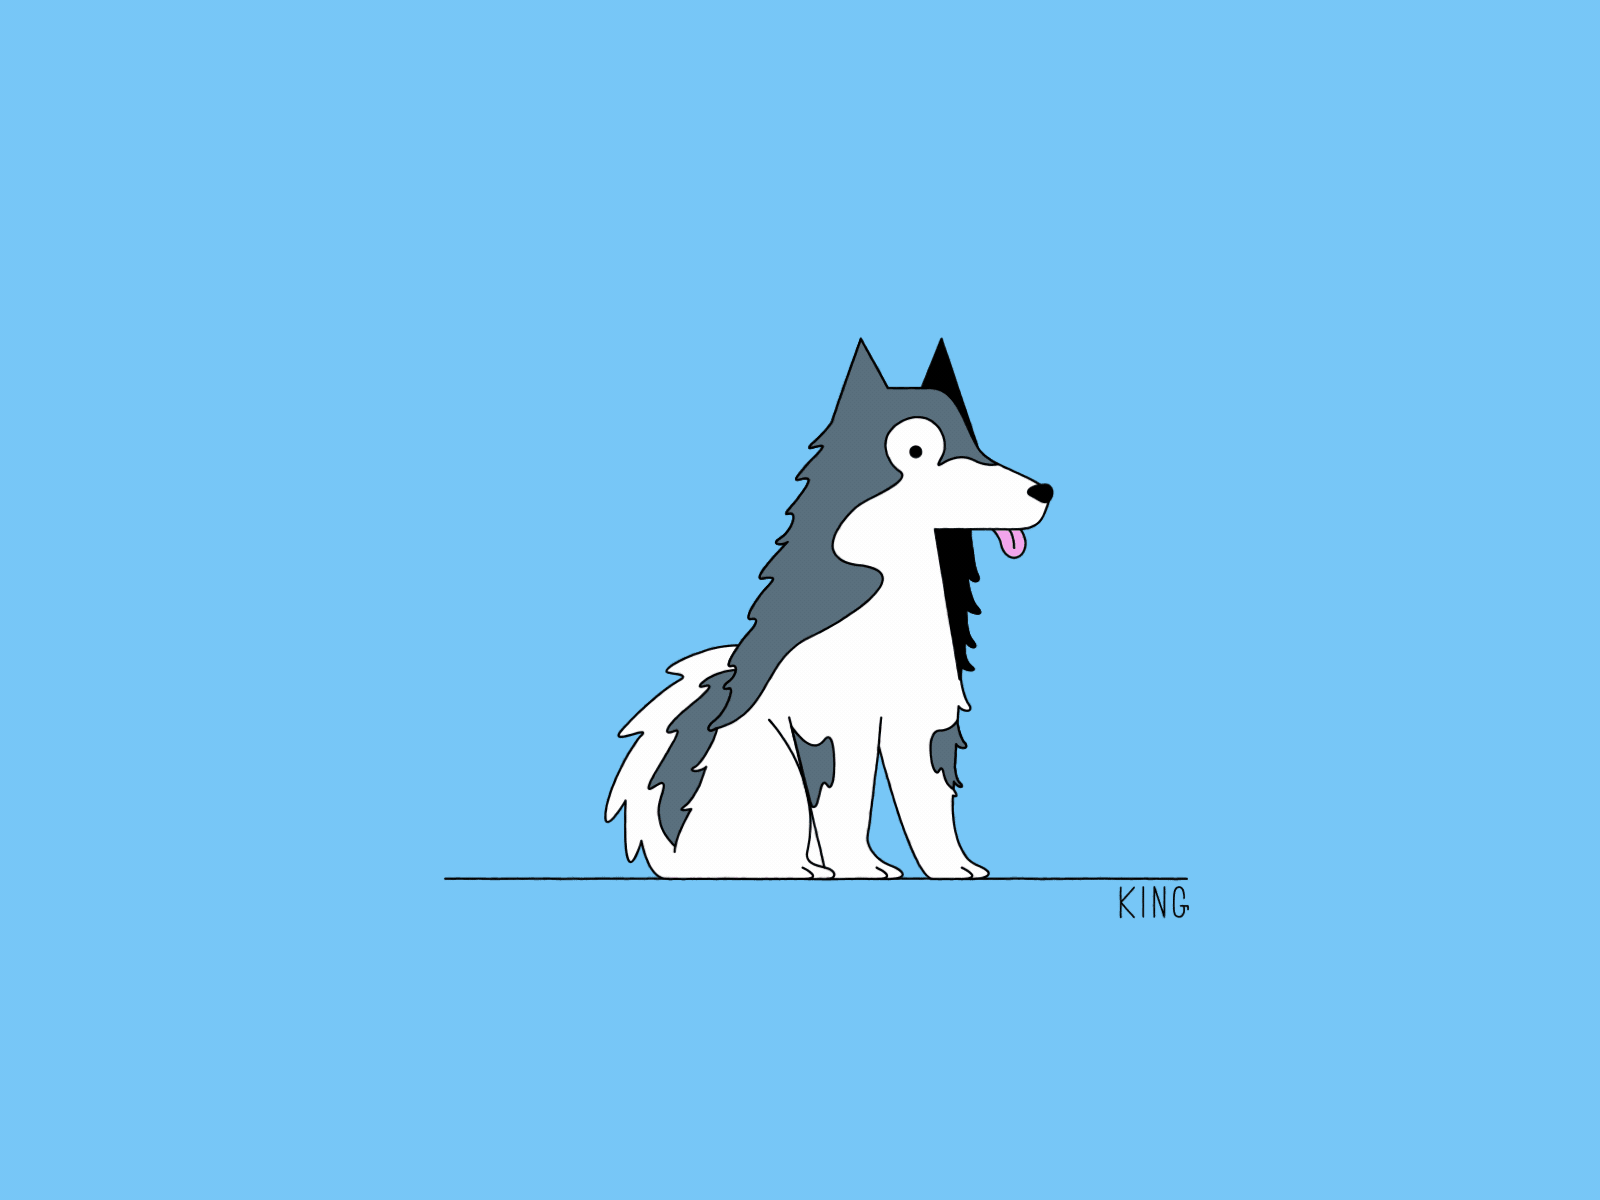 King the Doge 2d character 2d illustration dog husky vector